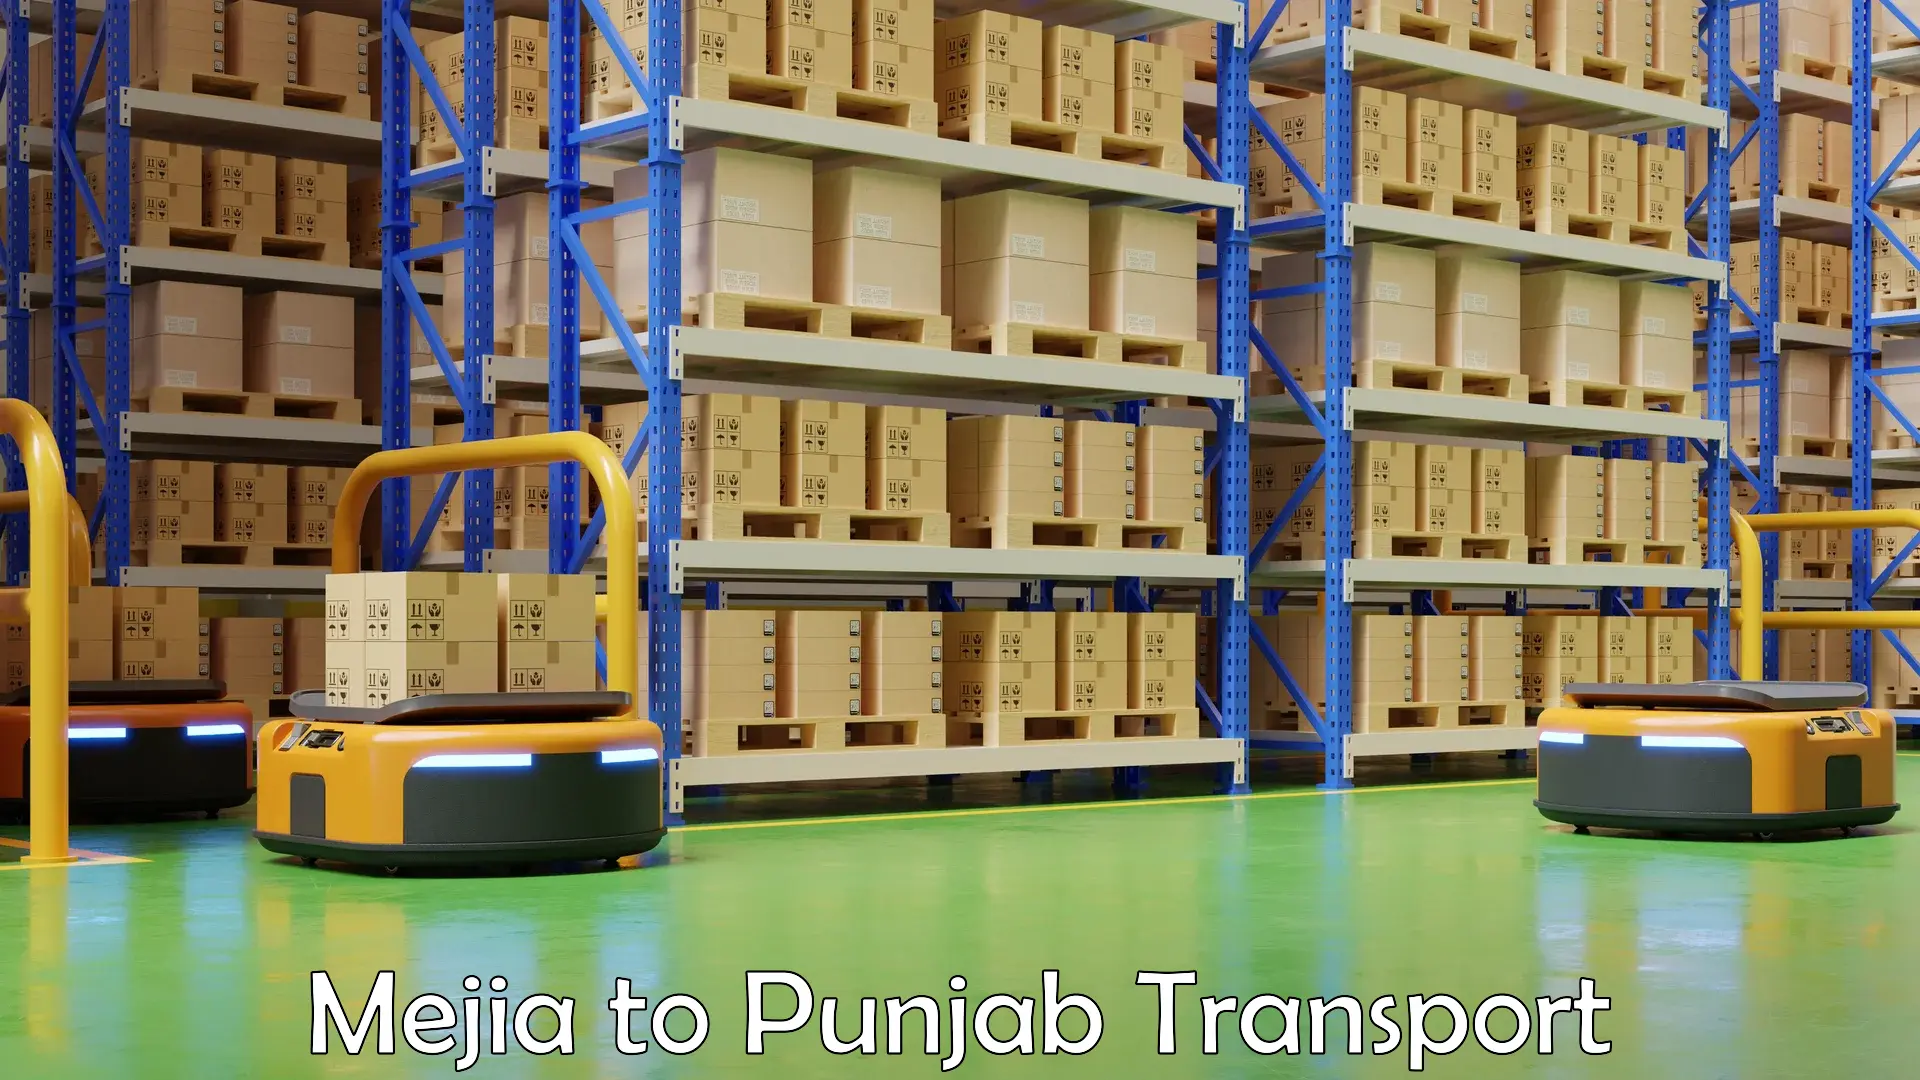 Pick up transport service Mejia to Punjab